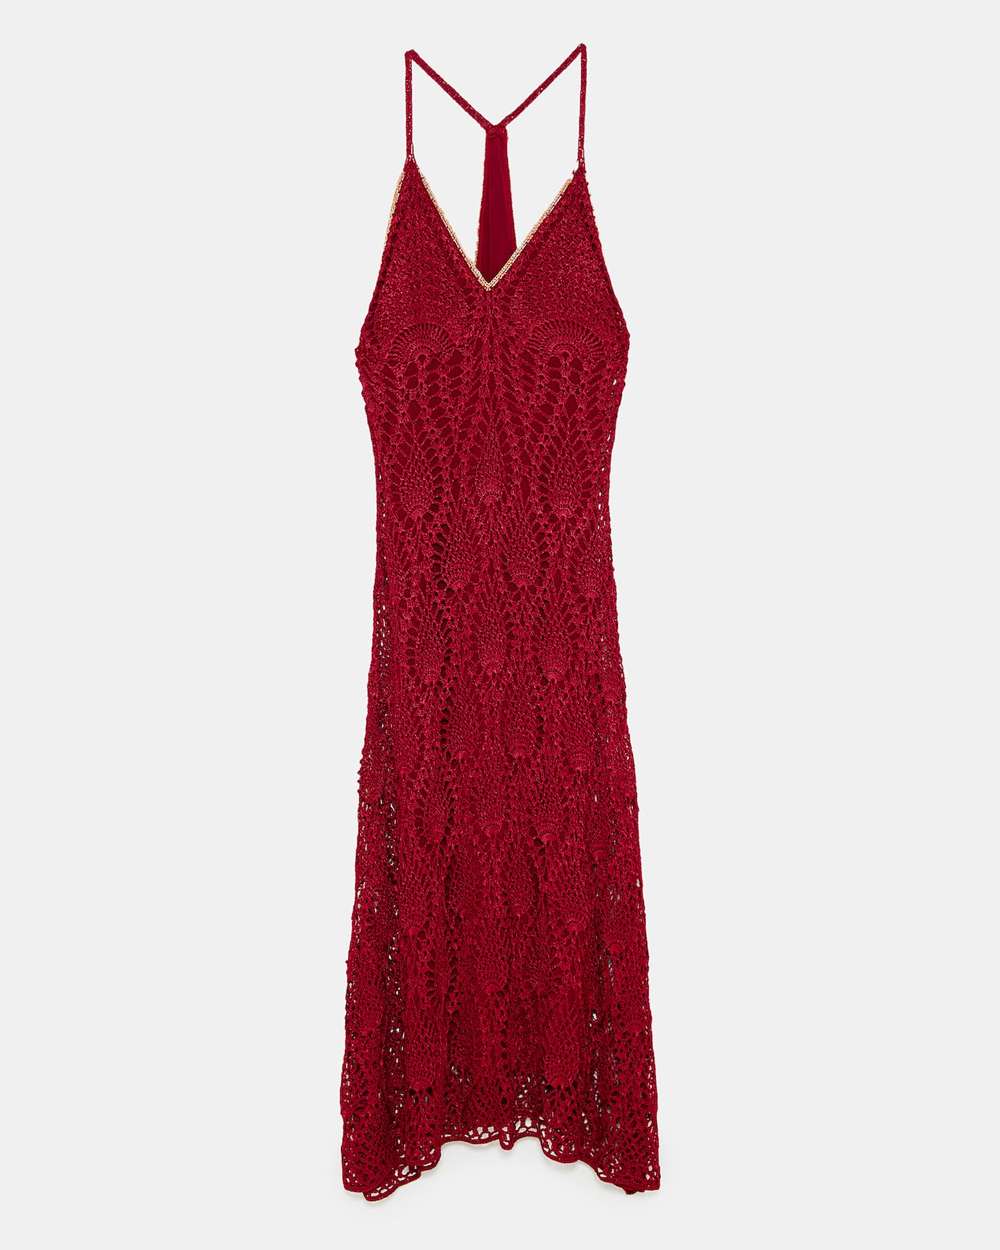 Crochet dress, $199 from Zara